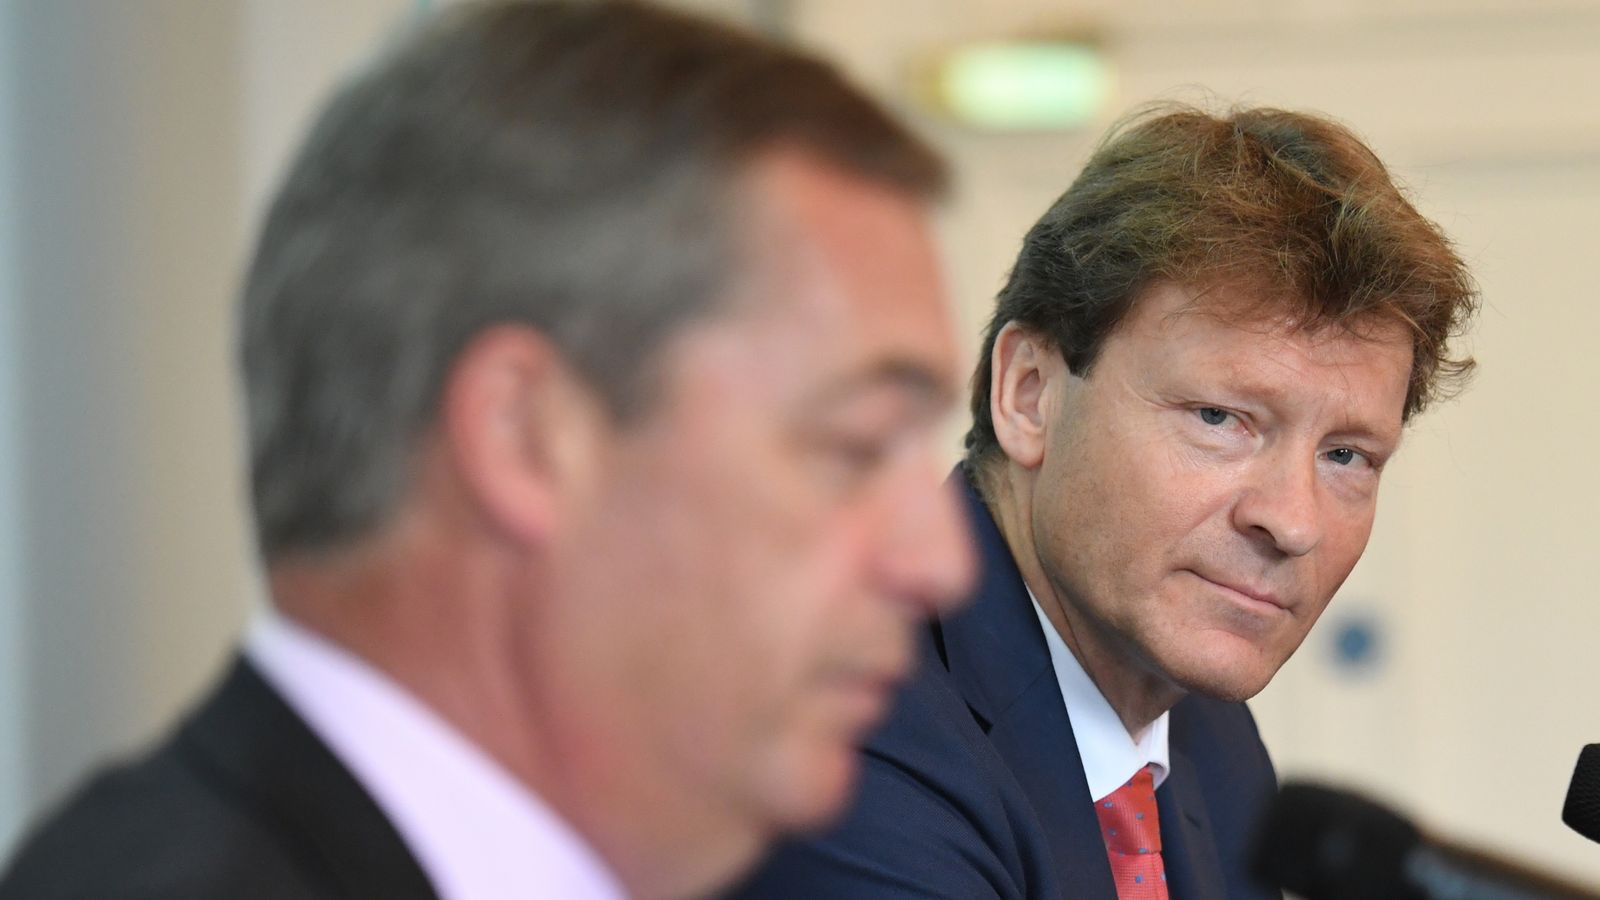 Nigel Farage may make political comeback, Reform UK leader suggests 